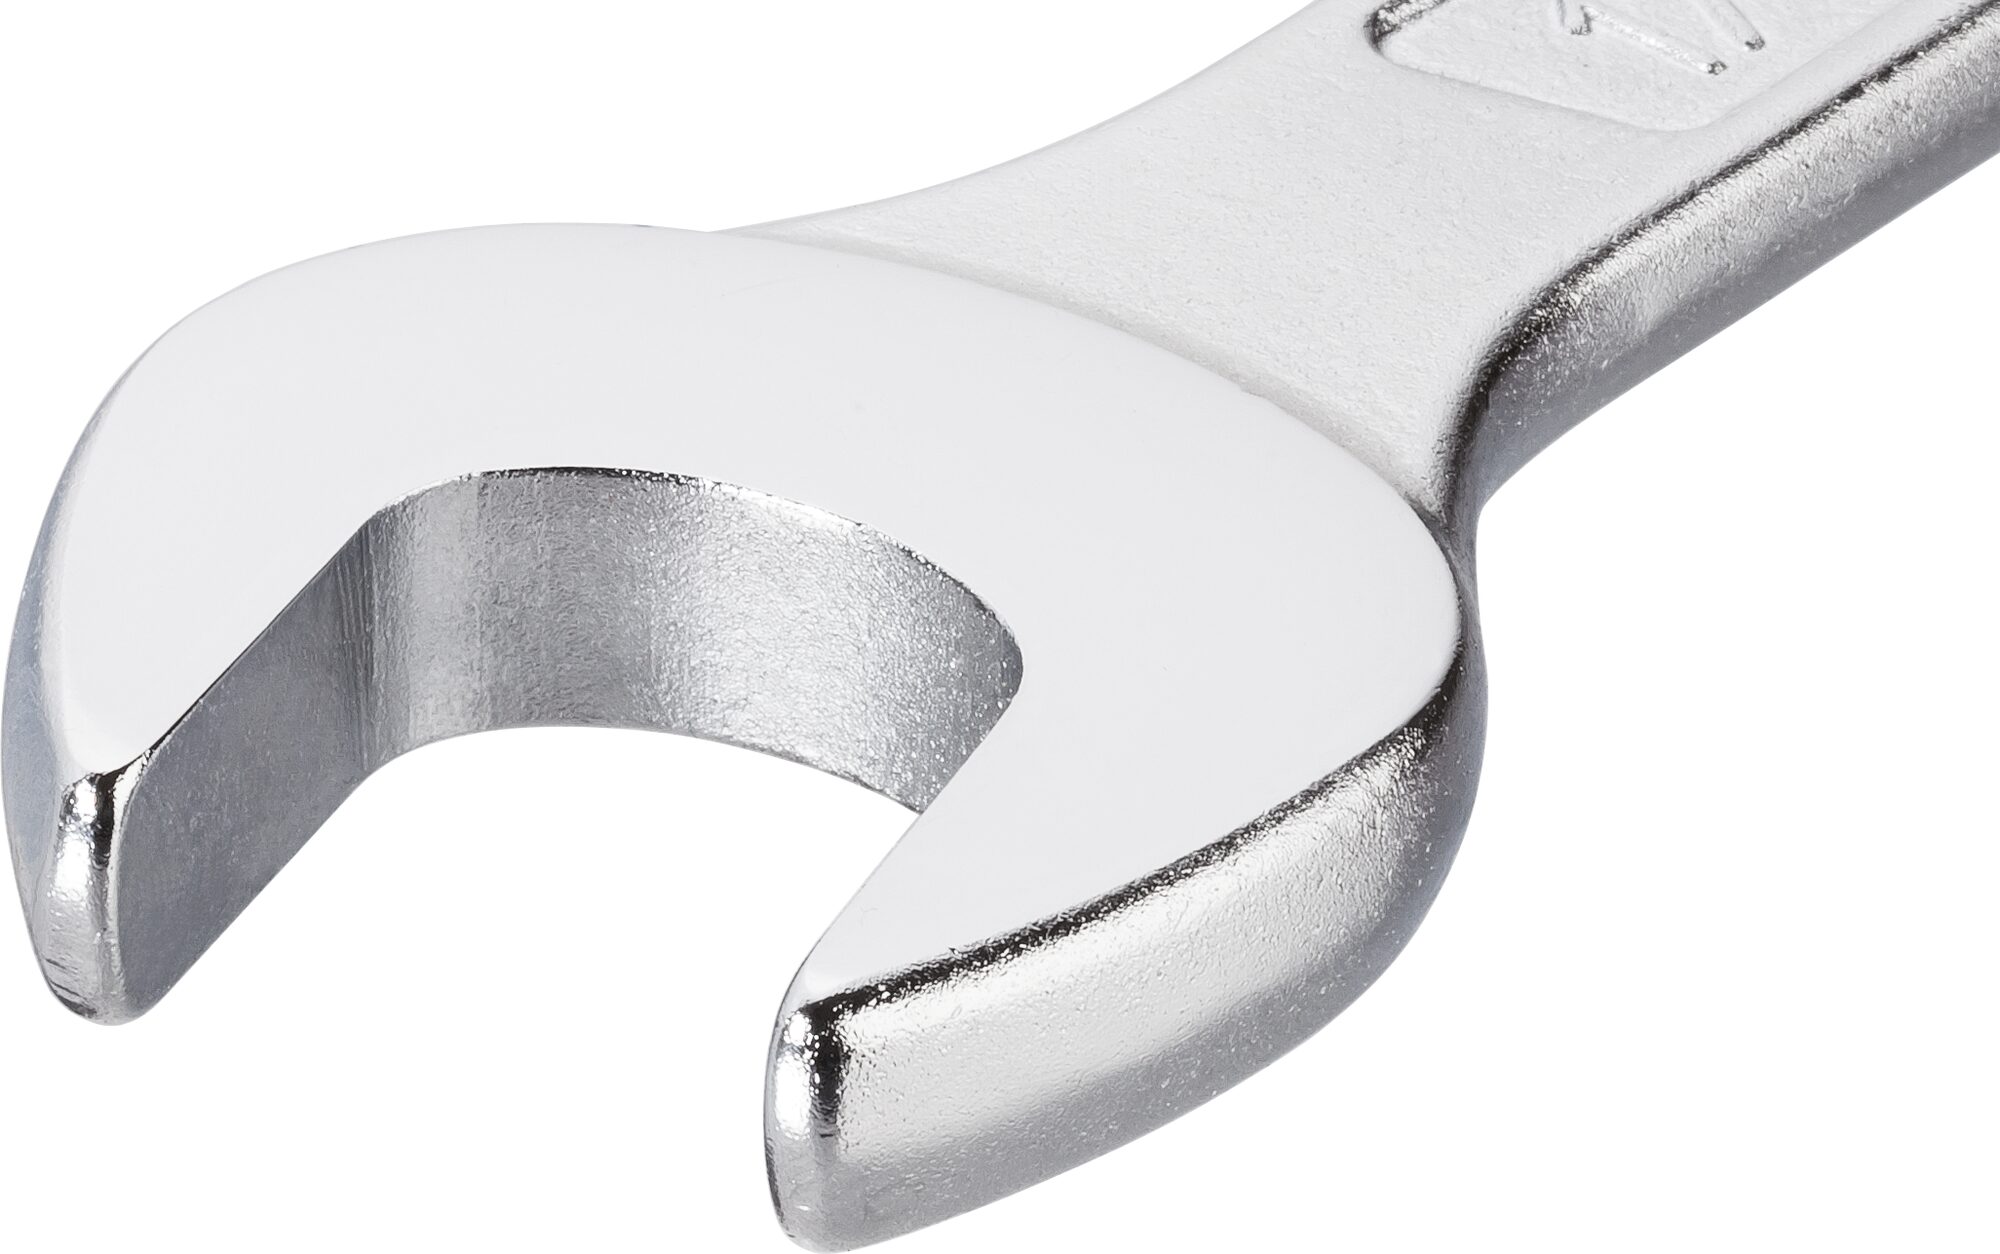 HAZET Ring-Maulschlüssel 600N-21 · Außen Doppel-Sechskant-Tractionsprofil · 21 mm